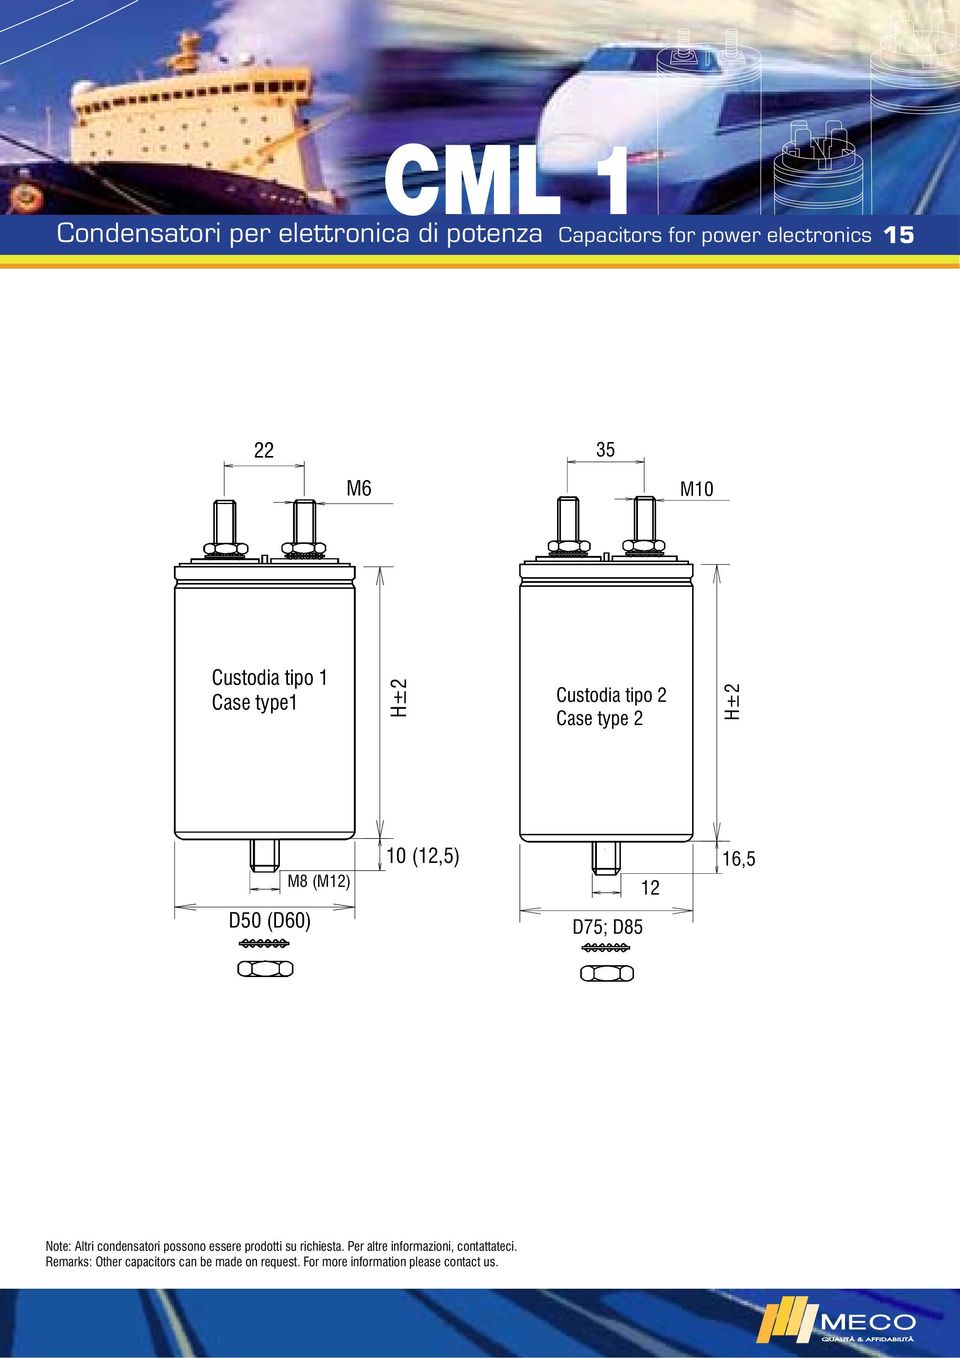 Note: Altri condensatori possono essere prodotti su richiesta.